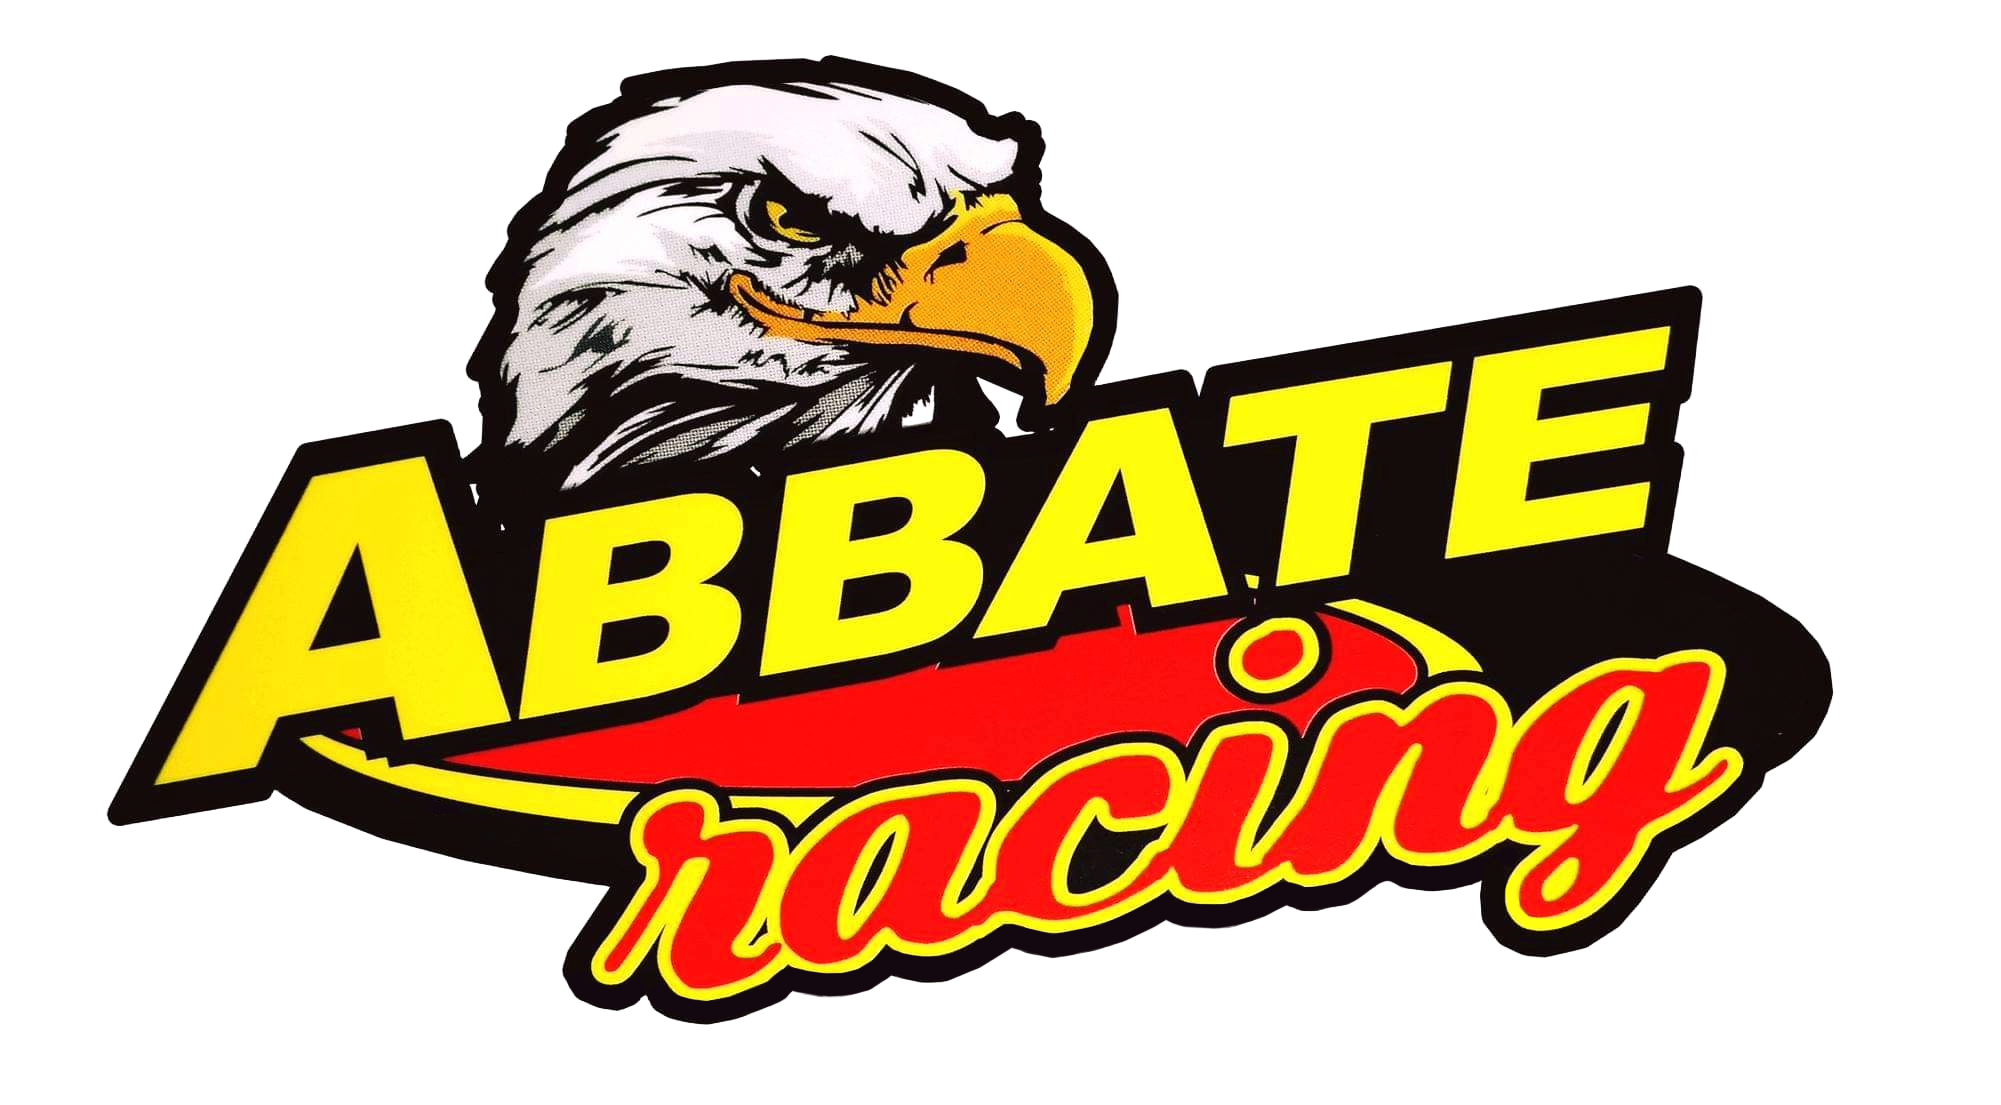 abbate racing